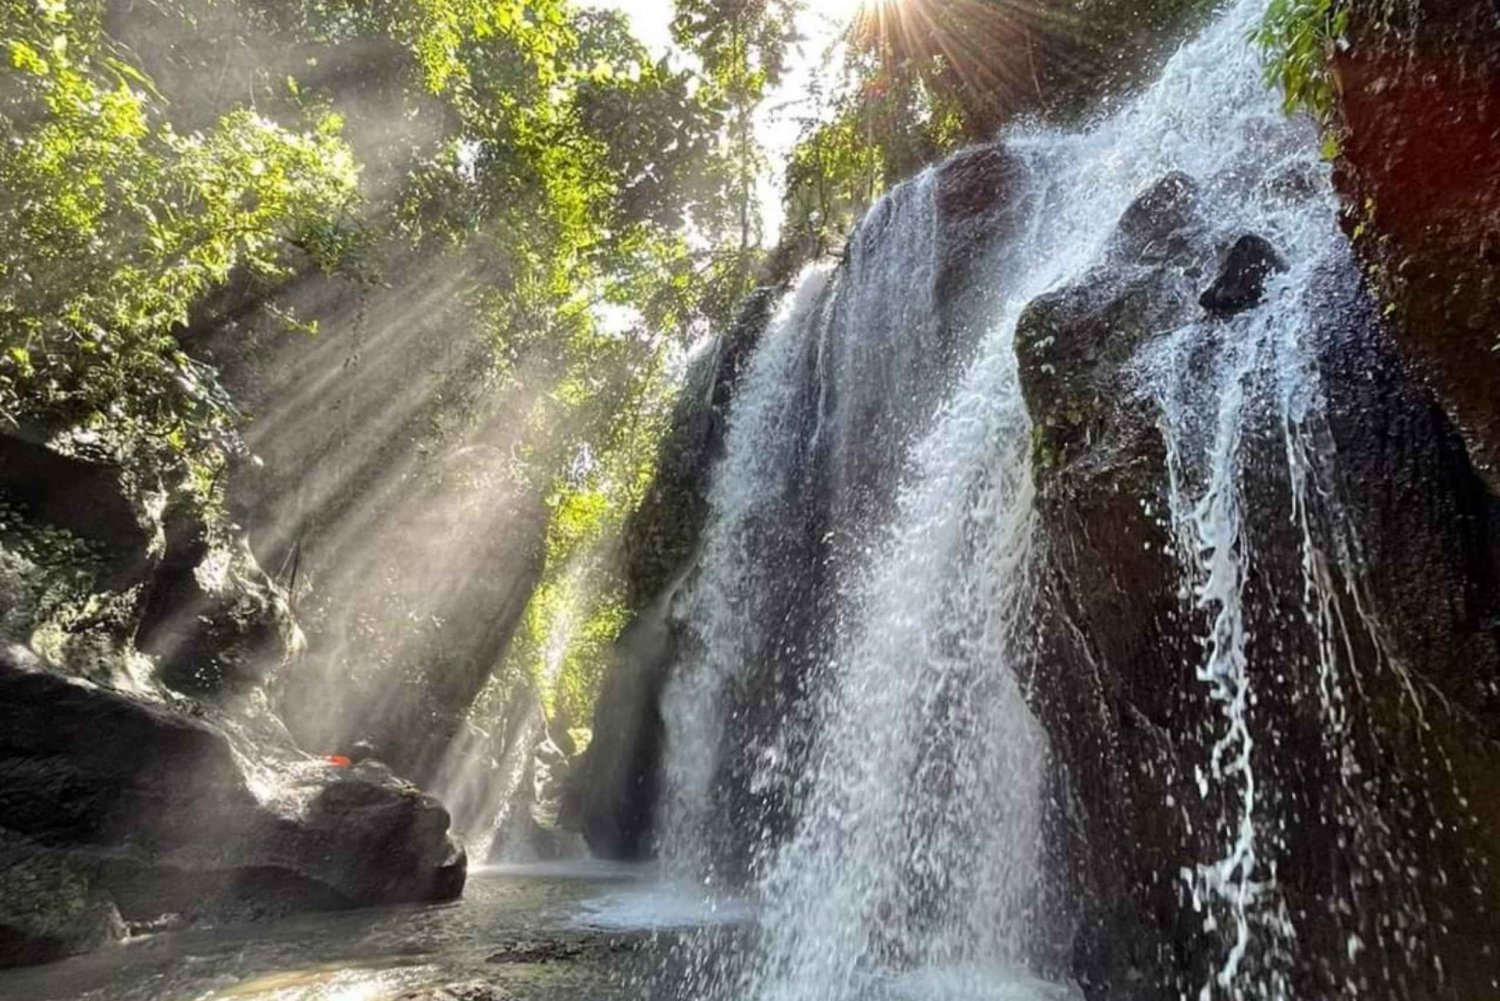 Bali: Dagsutflykt till Besakihtemplet och 2 dolda vattenfall